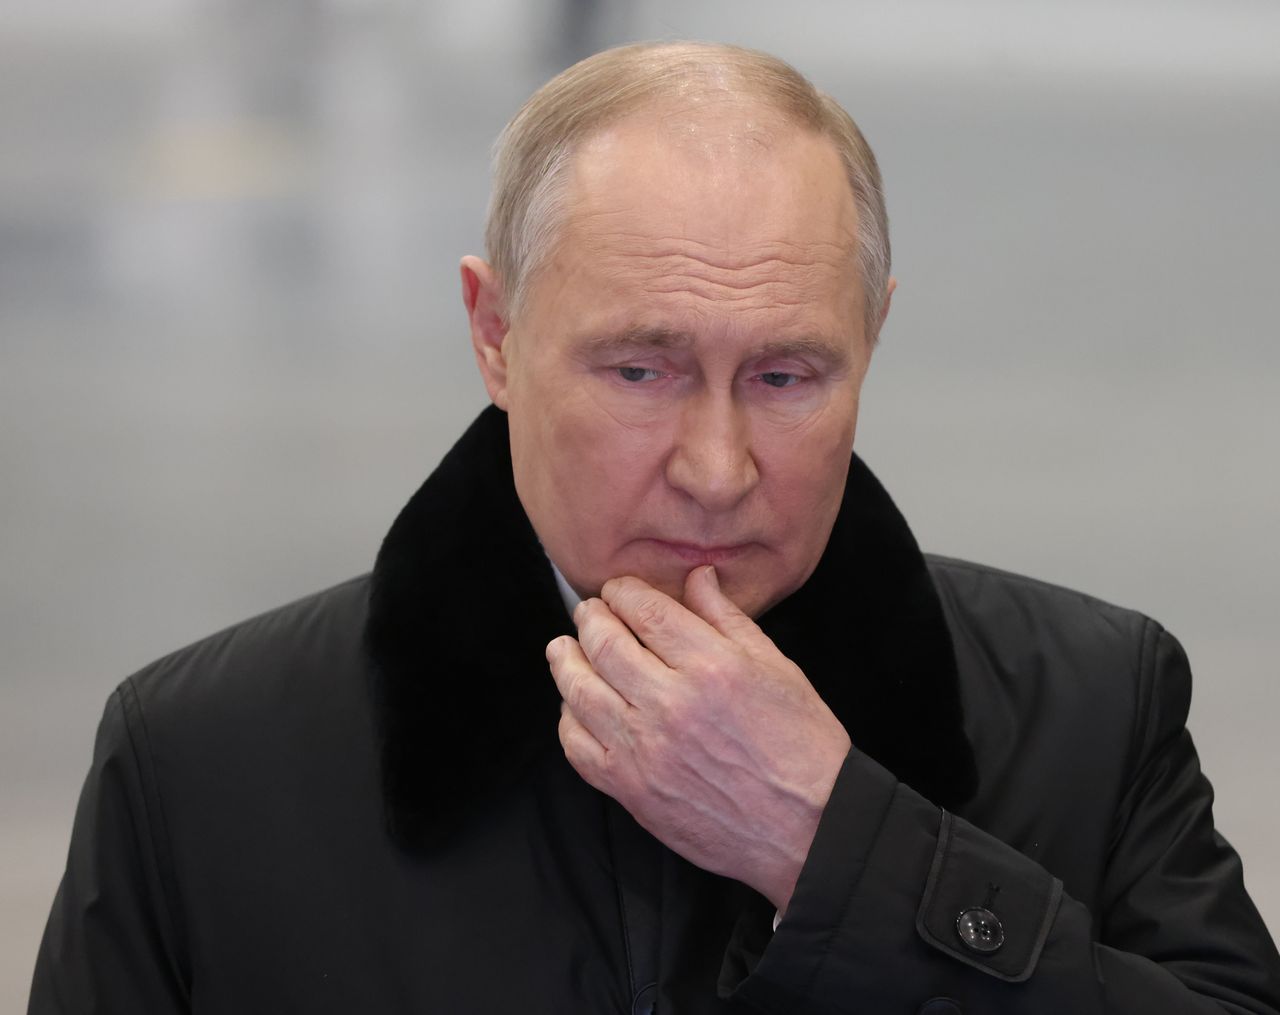 Krótki komunikat Putina po zamachu. Wicepremier przekazała jego słowa